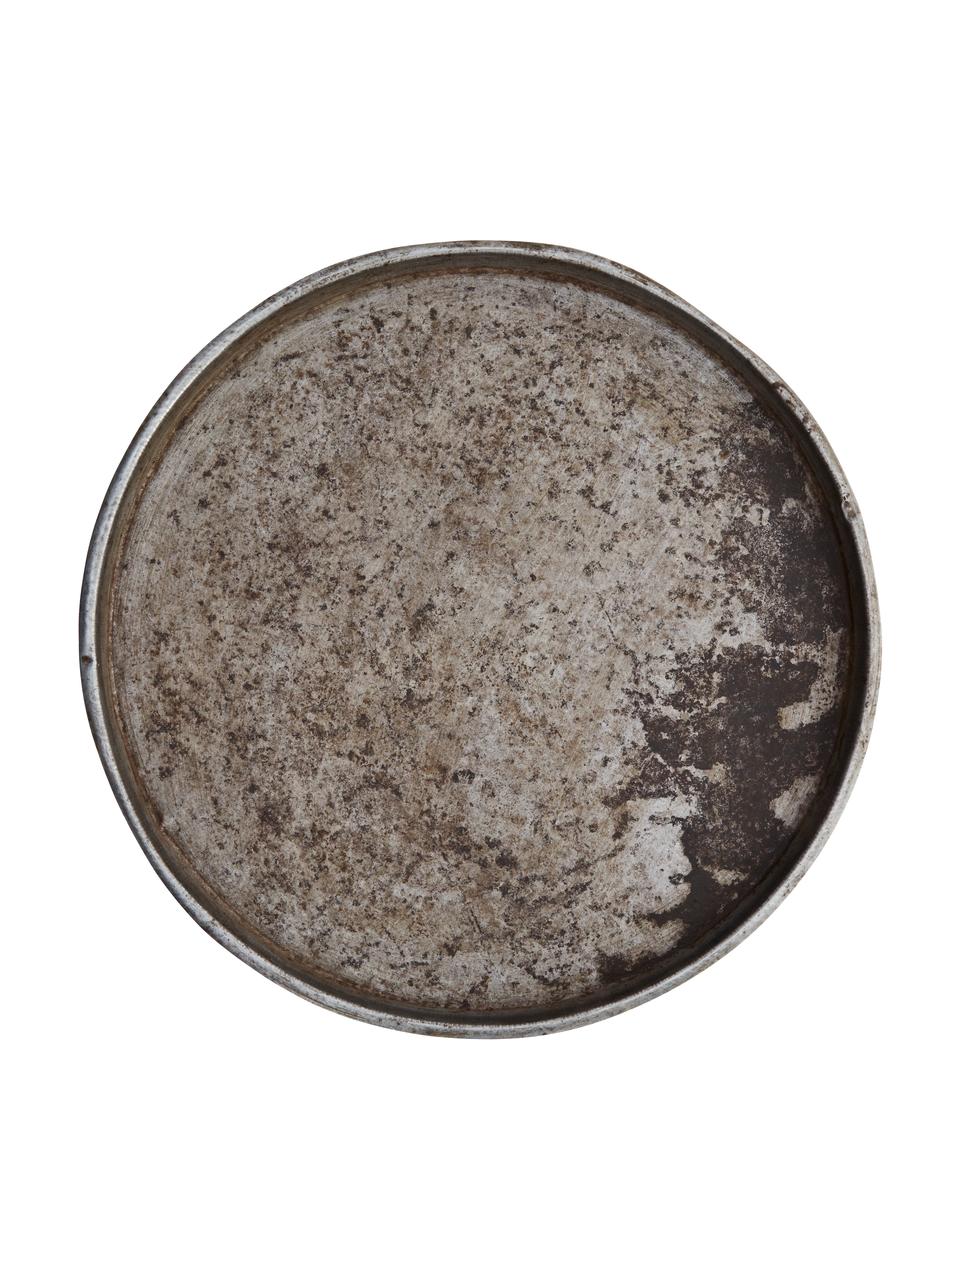 Dekorační tác z recyklovaného kovu se starožitným povrchem Cesar, Ocel, recyklovaná, Stříbrná, Ø 51 cm